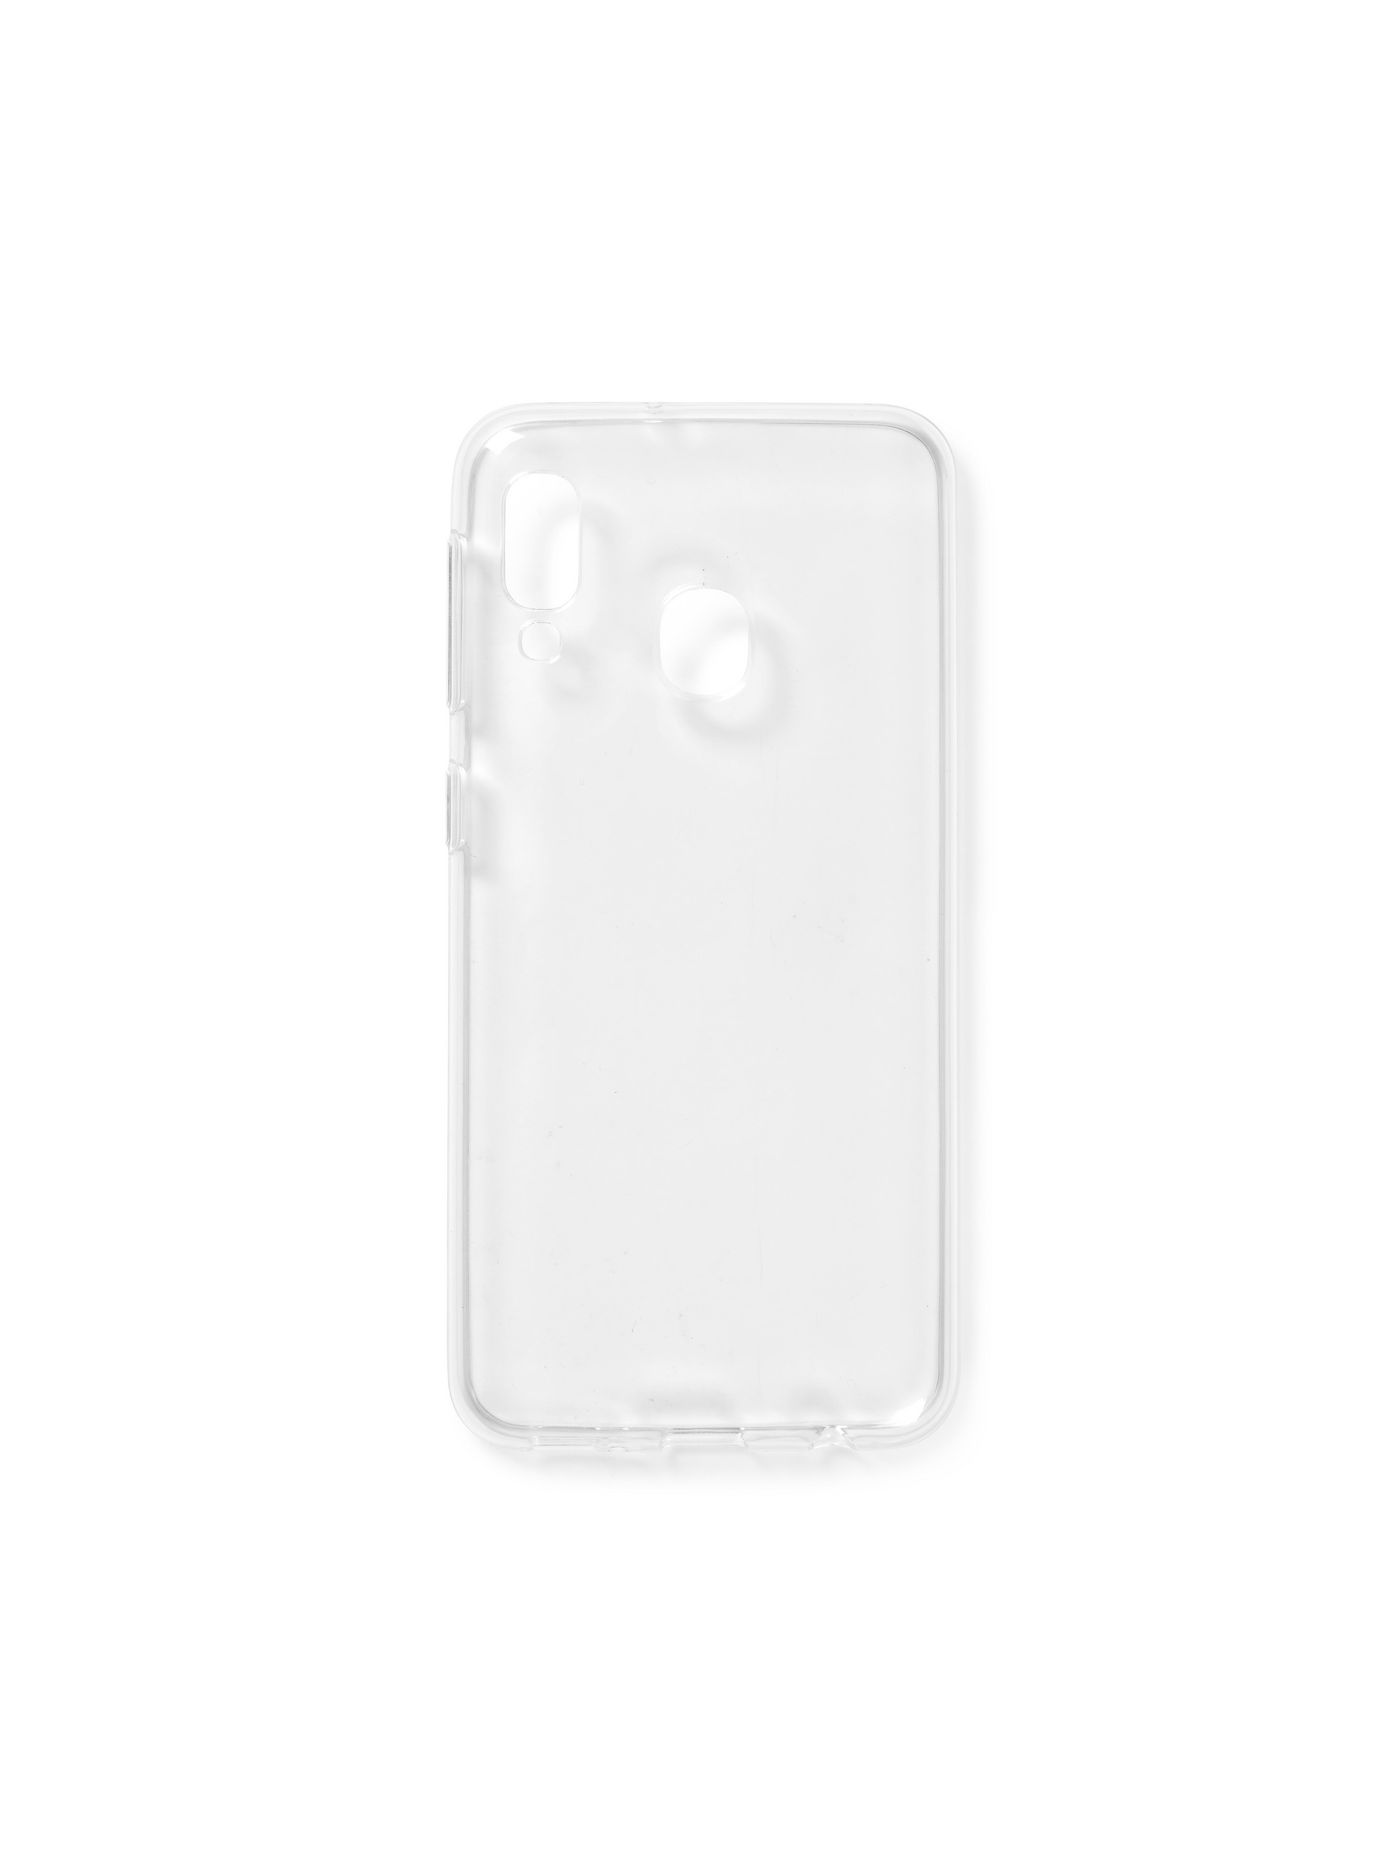 Samsung A20e Soft Case Clear Ultra-slim